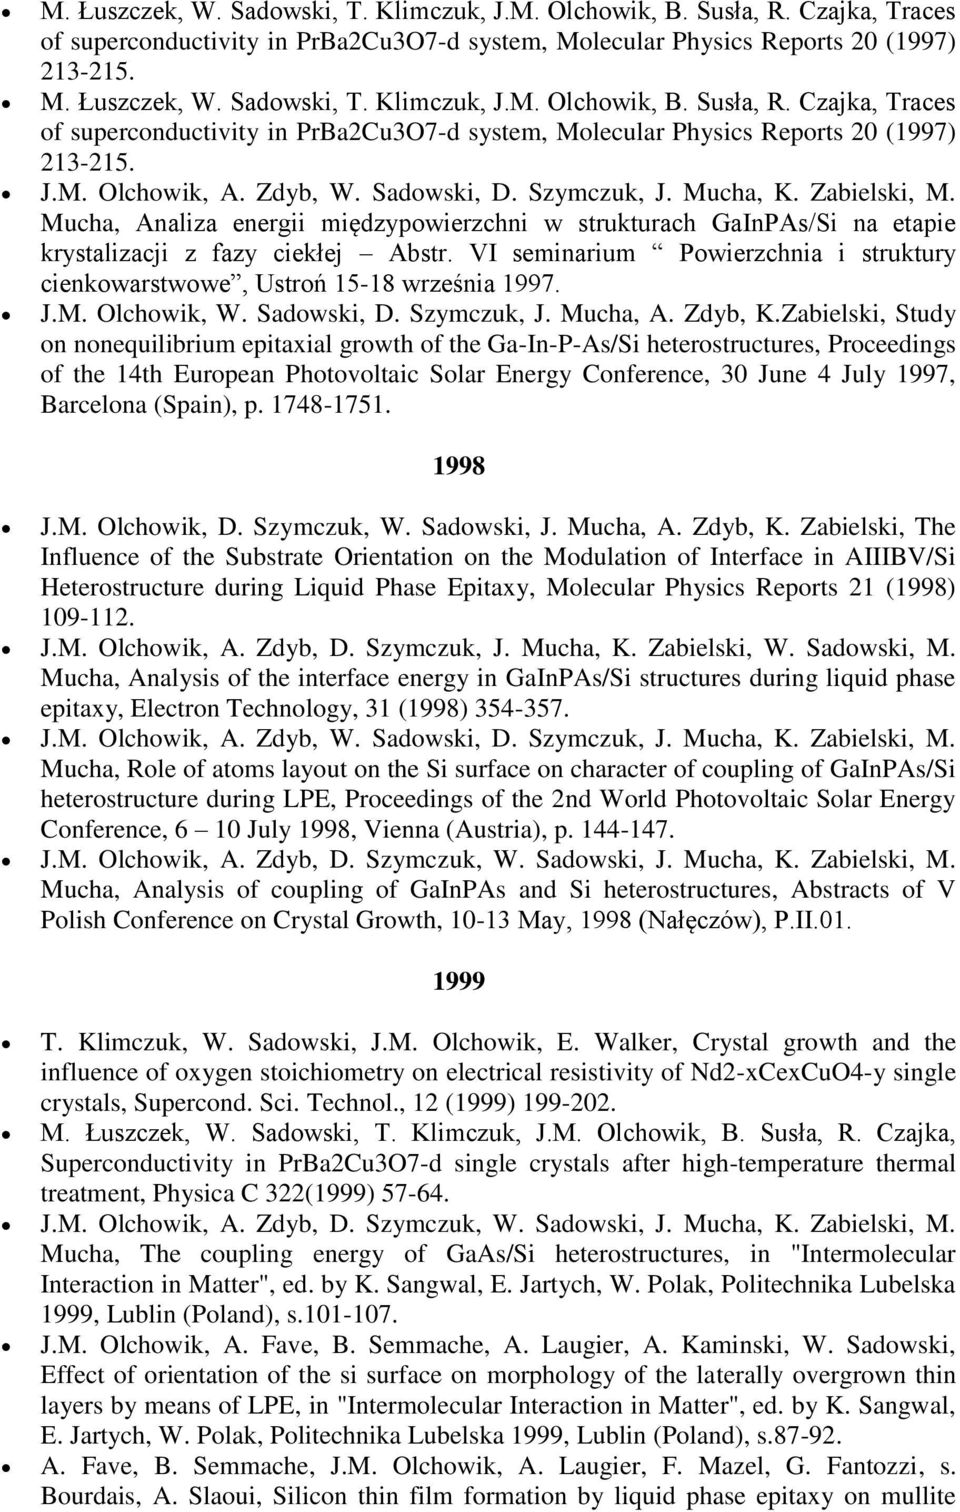 VI seminarium Powierzchnia i struktury cienkowarstwowe, Ustroń 15-18 września 1997. J.M. Olchowik, W. Sadowski, D. Szymczuk, J. Mucha, A. Zdyb, K.